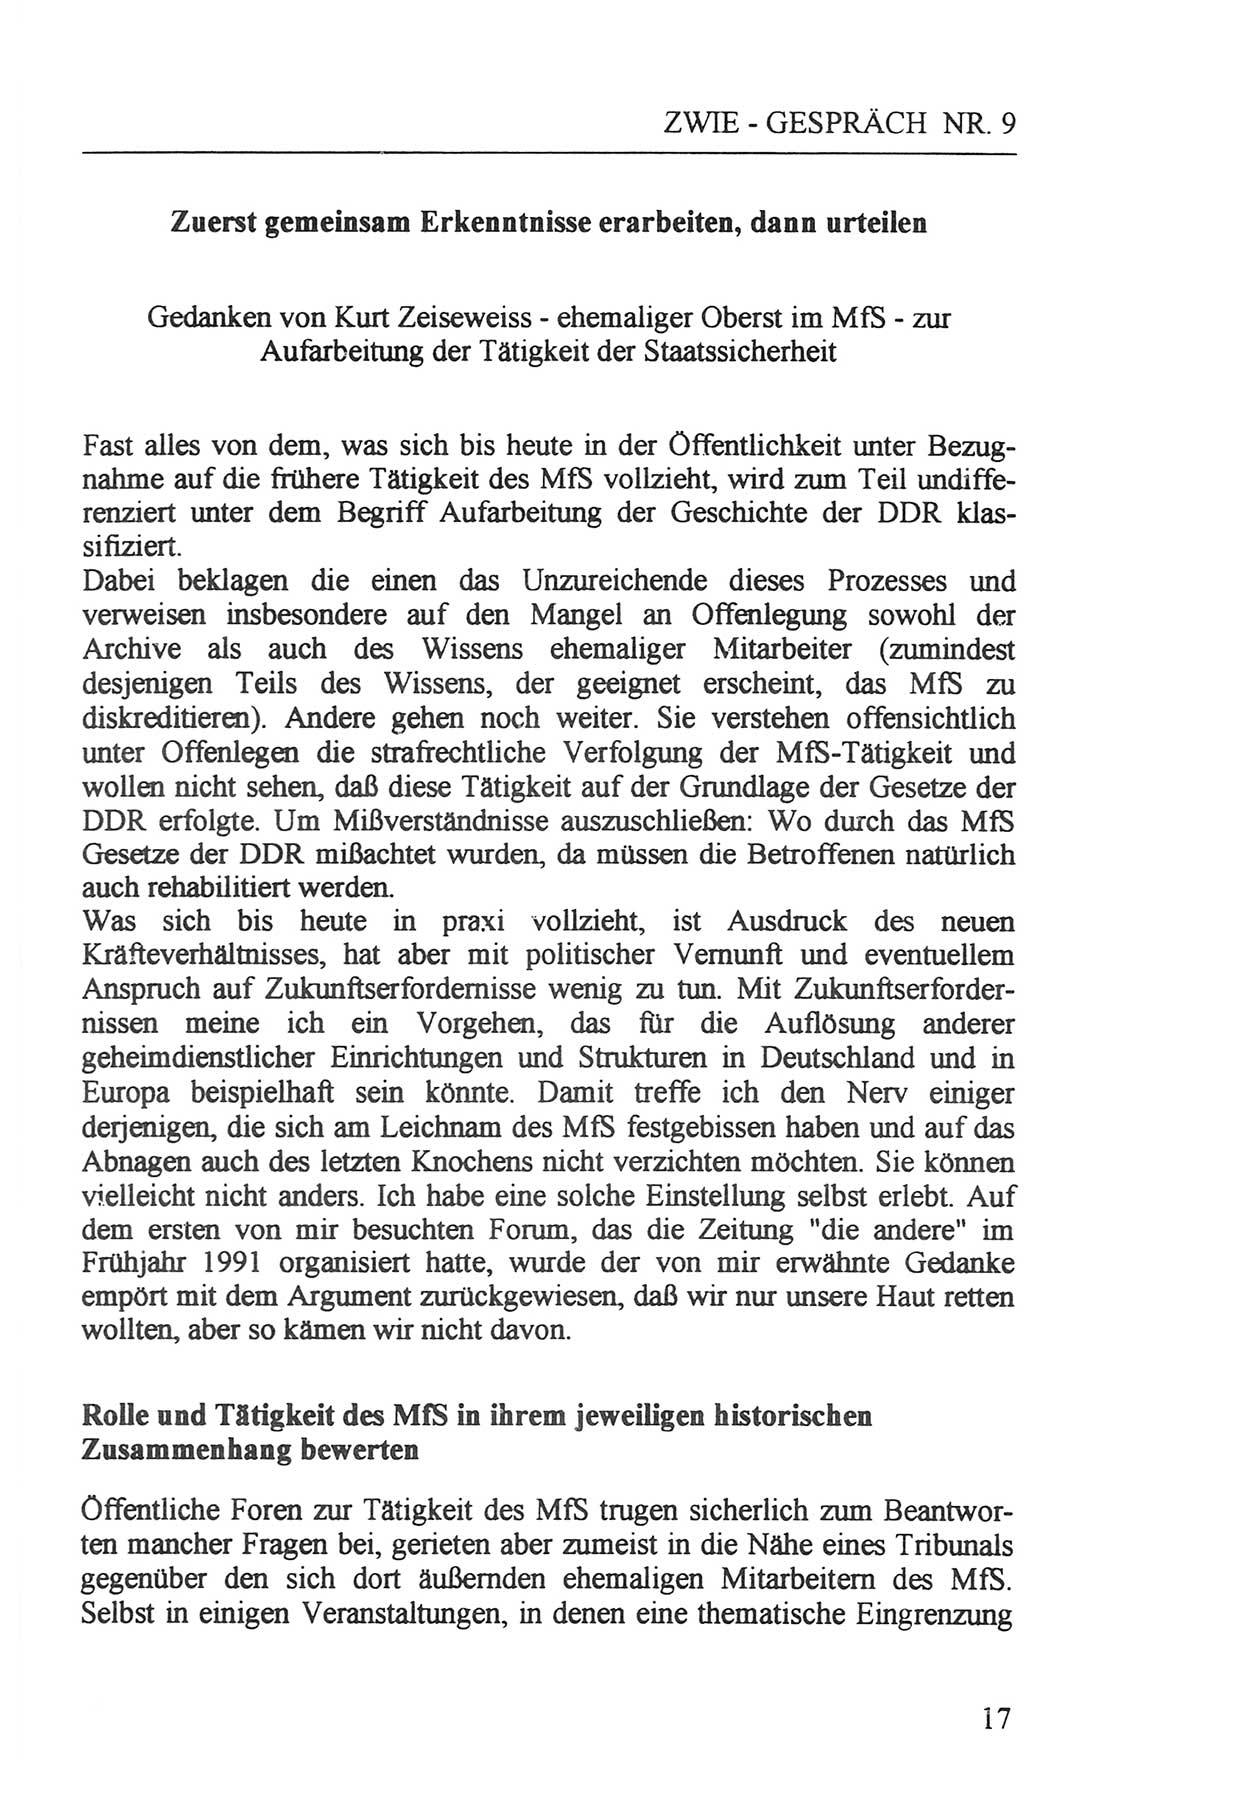 Zwie-Gespräch, Beiträge zur Aufarbeitung der Staatssicherheits-Vergangenheit [Deutsche Demokratische Republik (DDR)], Ausgabe Nr. 9, Berlin 1992, Seite 17 (Zwie-Gespr. Ausg. 9 1992, S. 17)